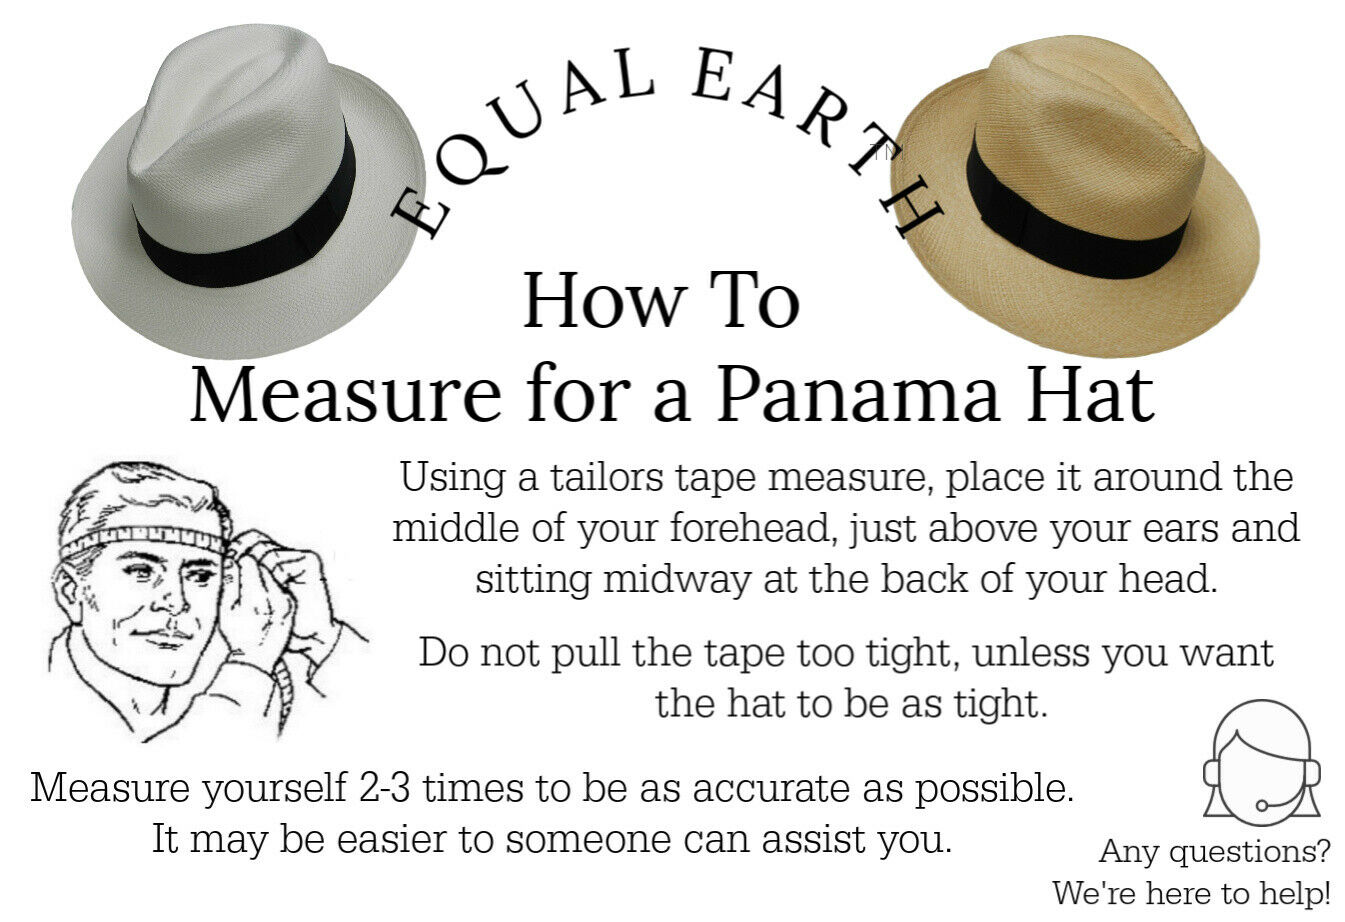 PRE-ORDER Natural Panama Hat